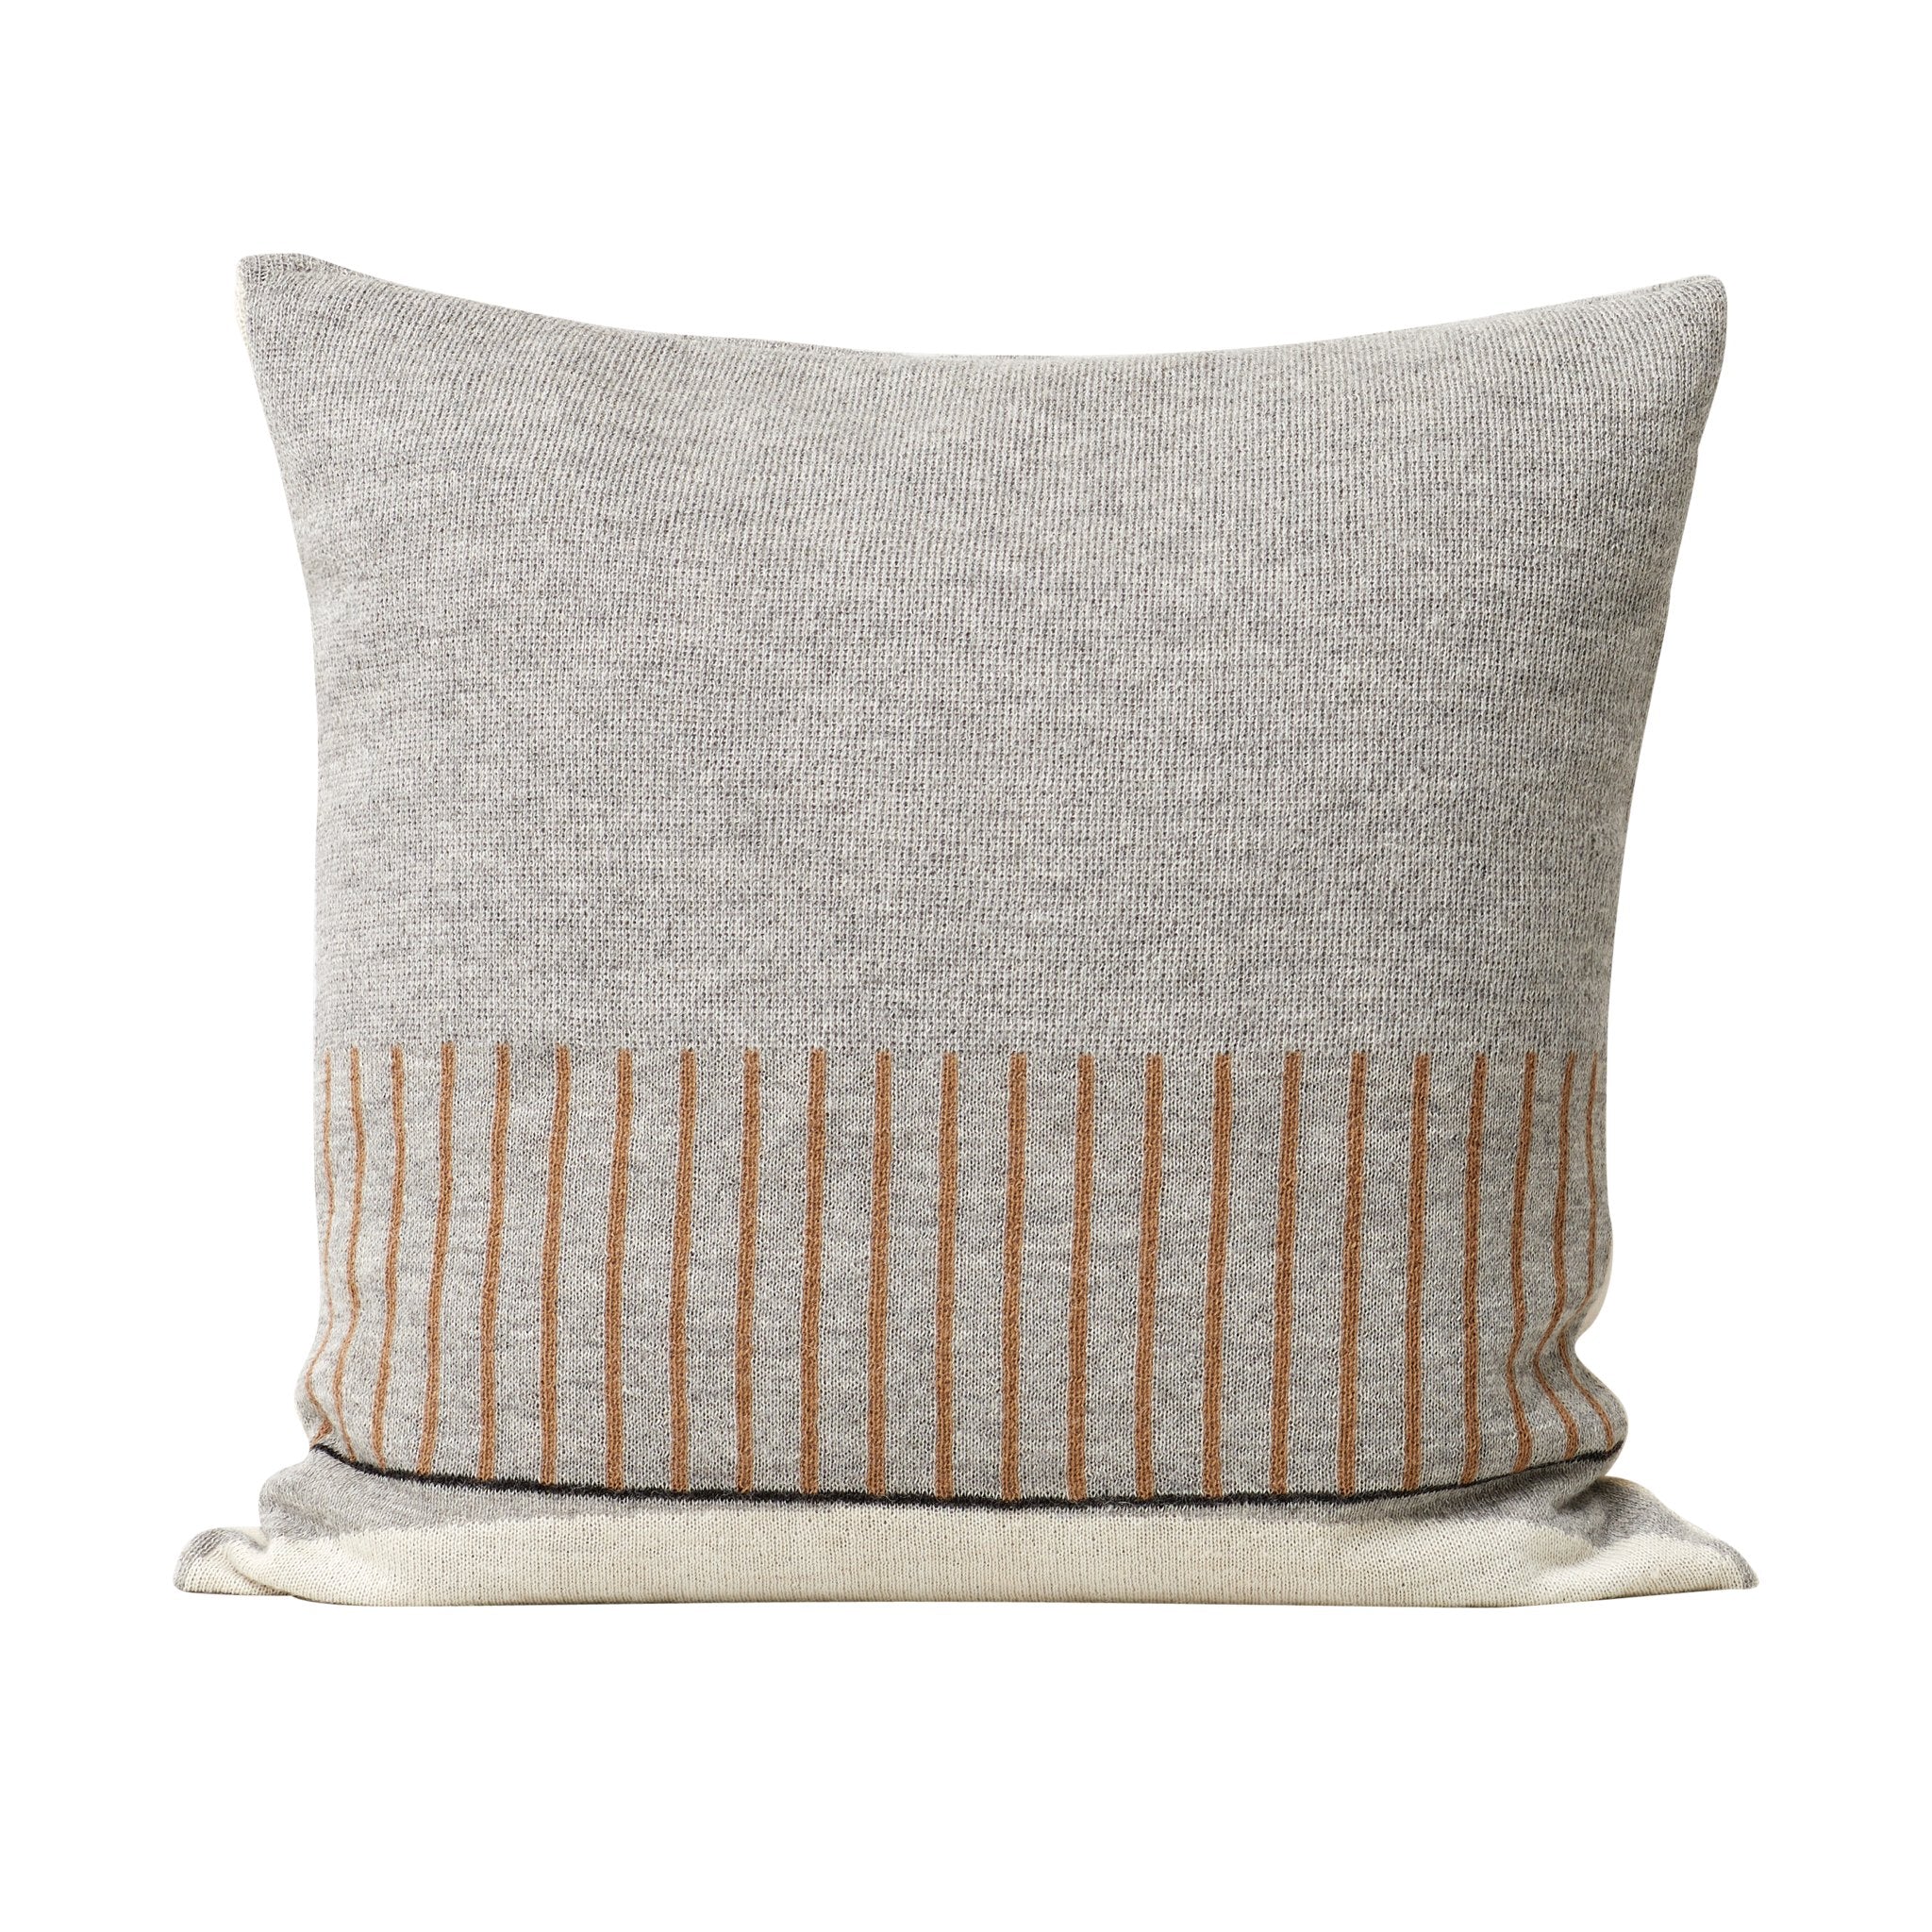 Aymara Cushion Pattern Grey by Form and Refine